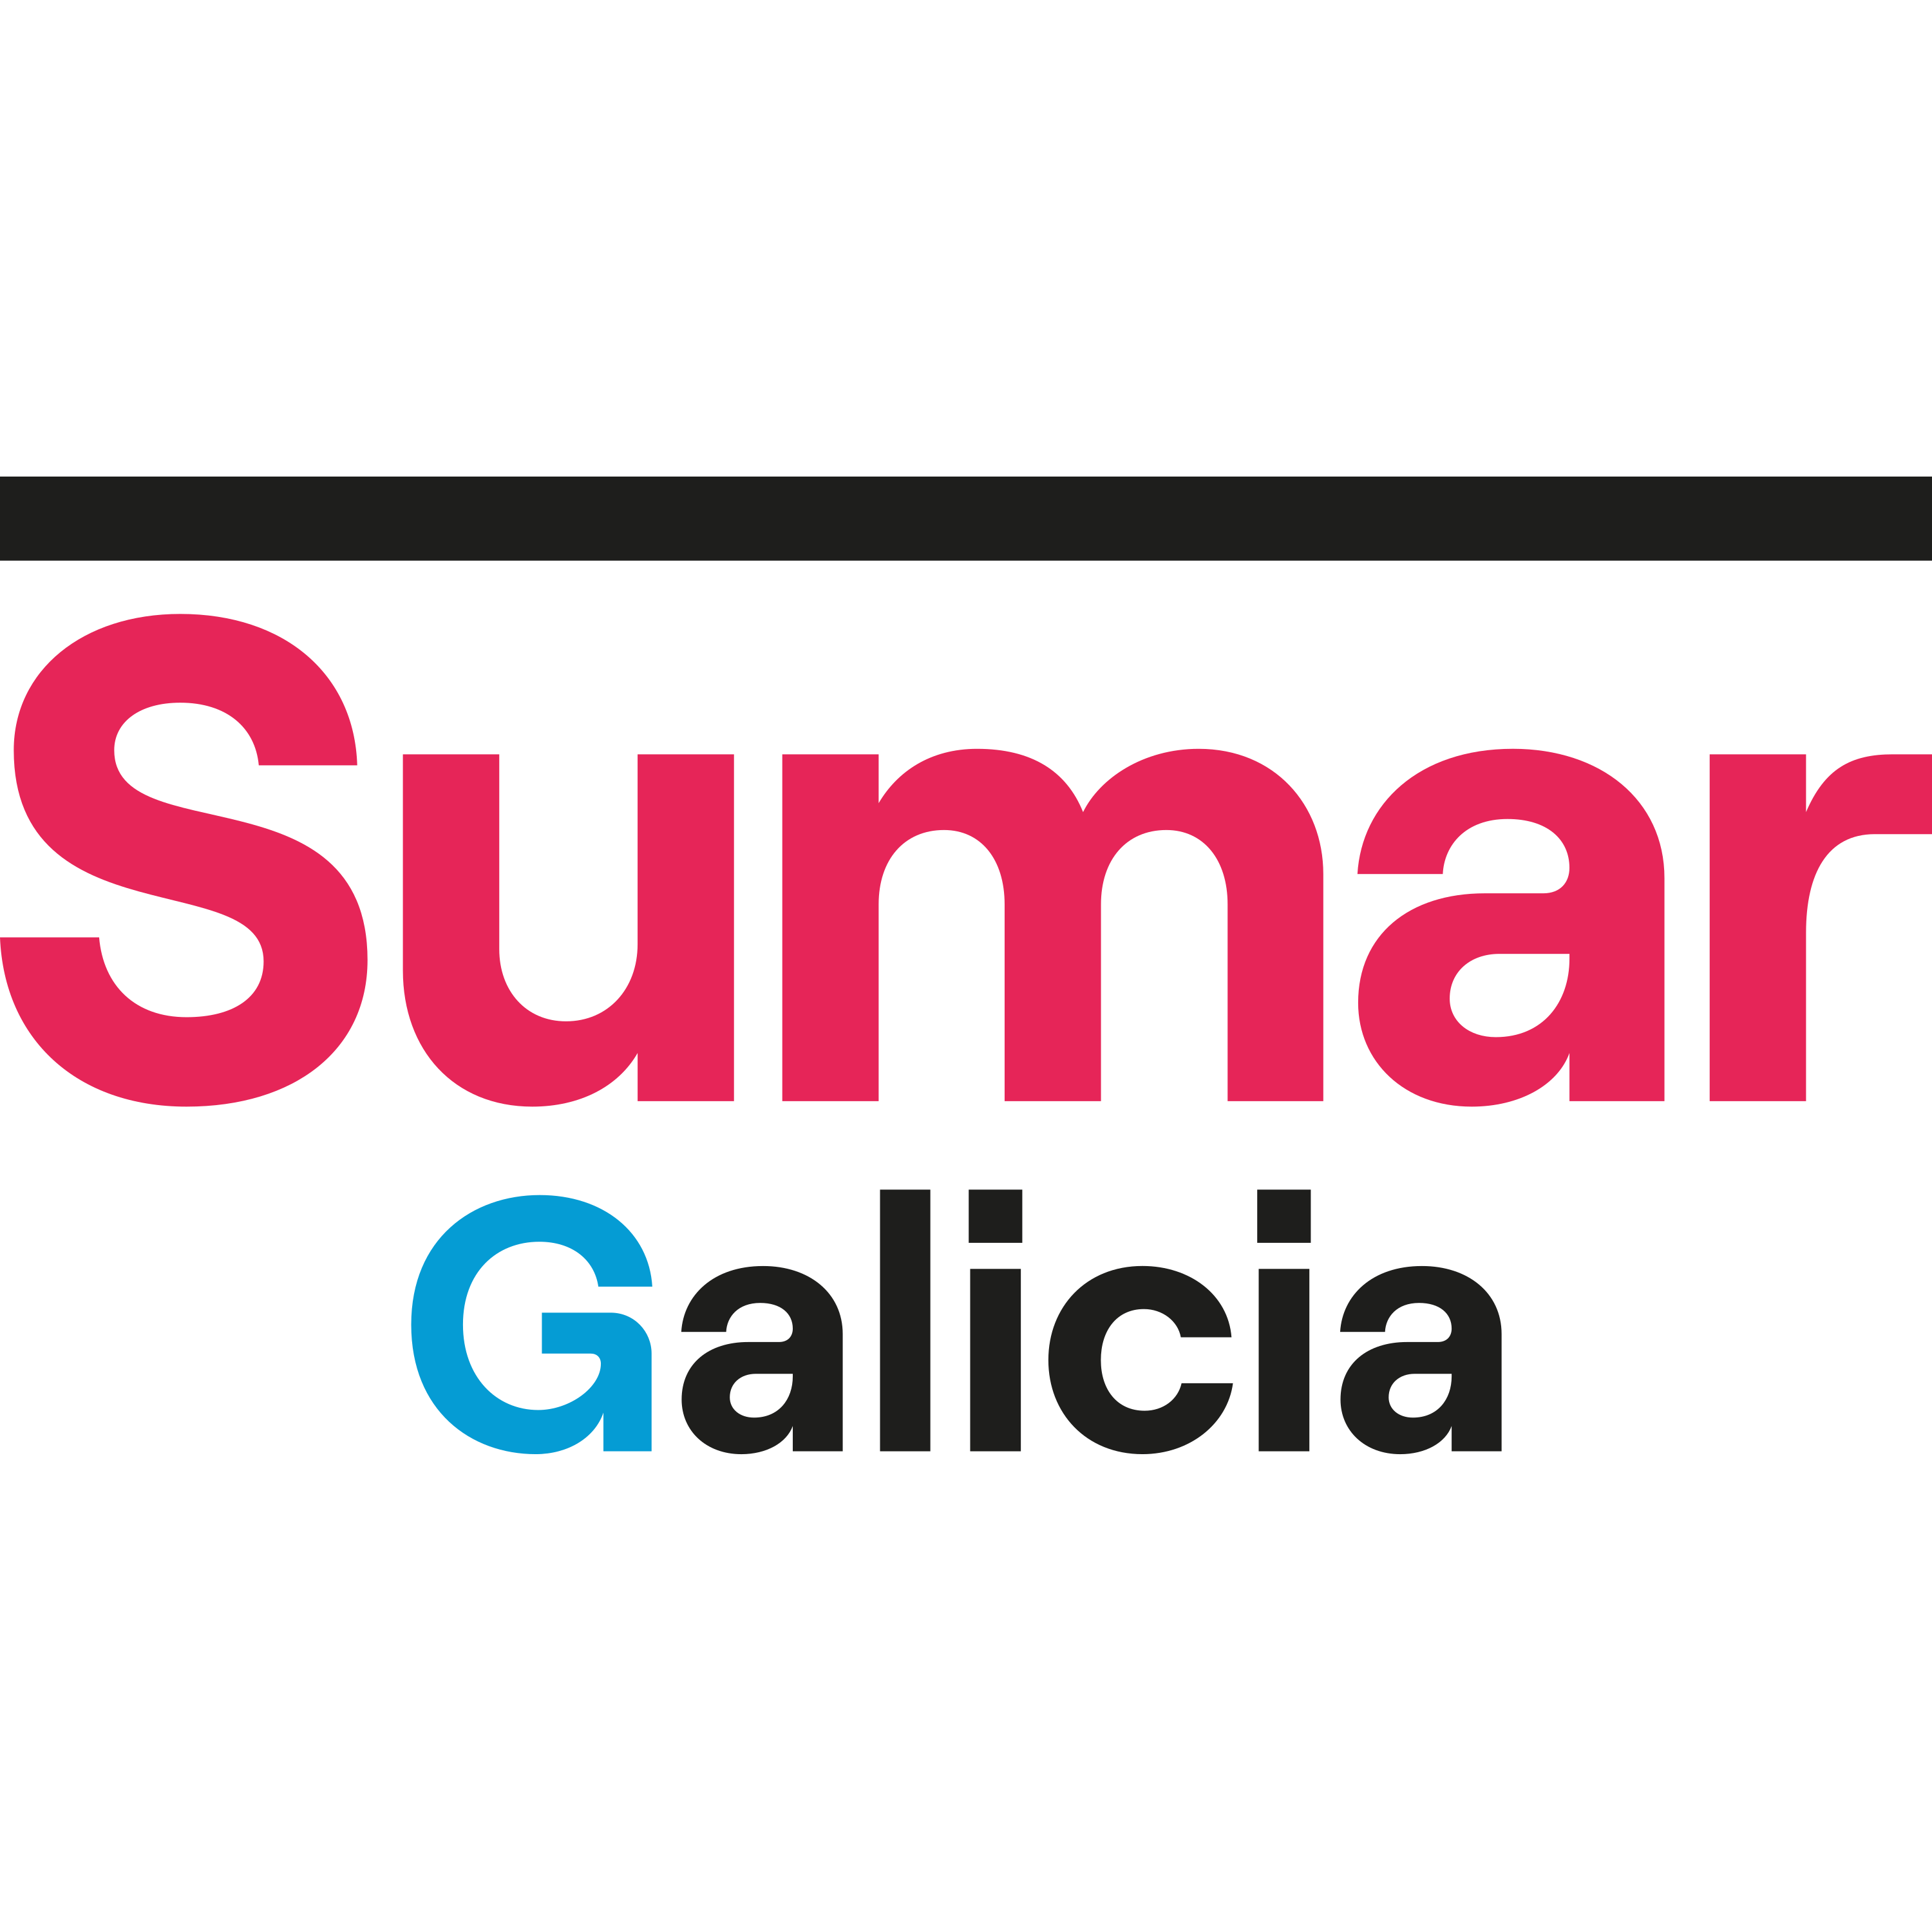 Sumar Galicia Logo  Transparent Image